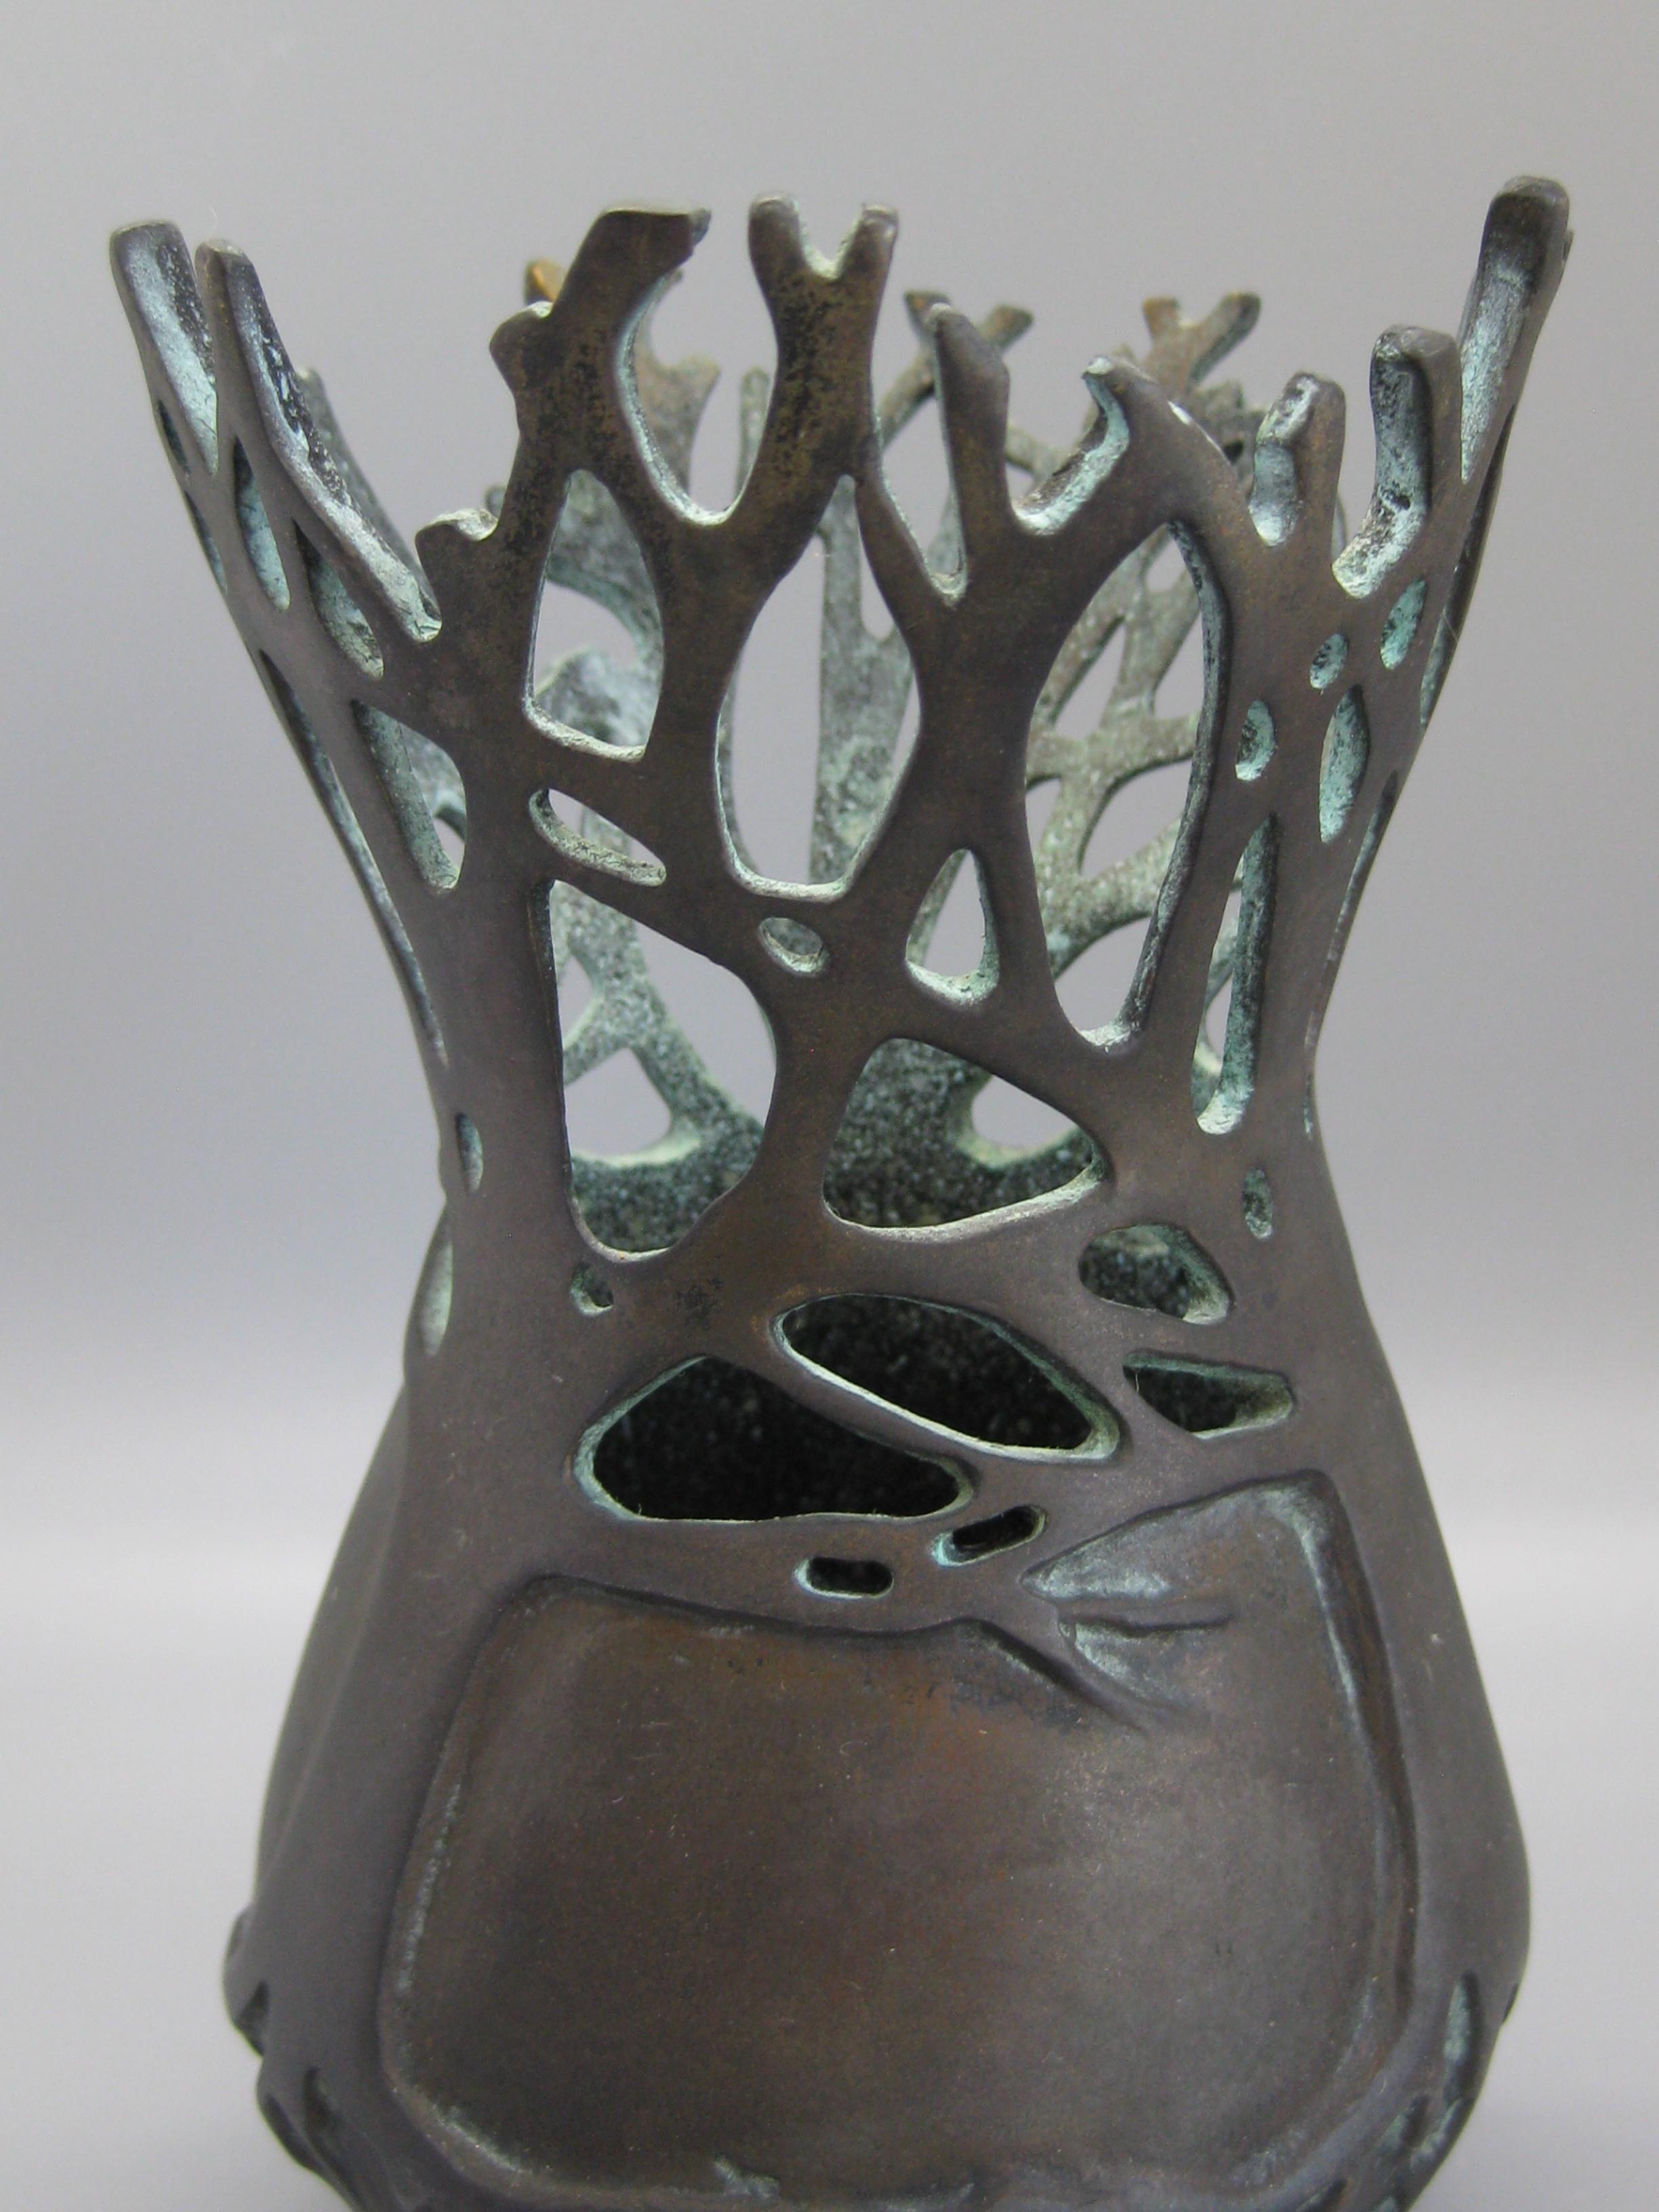 Hervorragende Vasen-/Gefäßskulptur aus Bronze der aufgeführten Künstlerin Carol Alleman, um 2001. Geringe Produktion von nur 75 hergestellt und dies ist Nummer 9. Signiert auf der Unterseite. Tolle dunkle Patina und eine wunderbare organische Form.